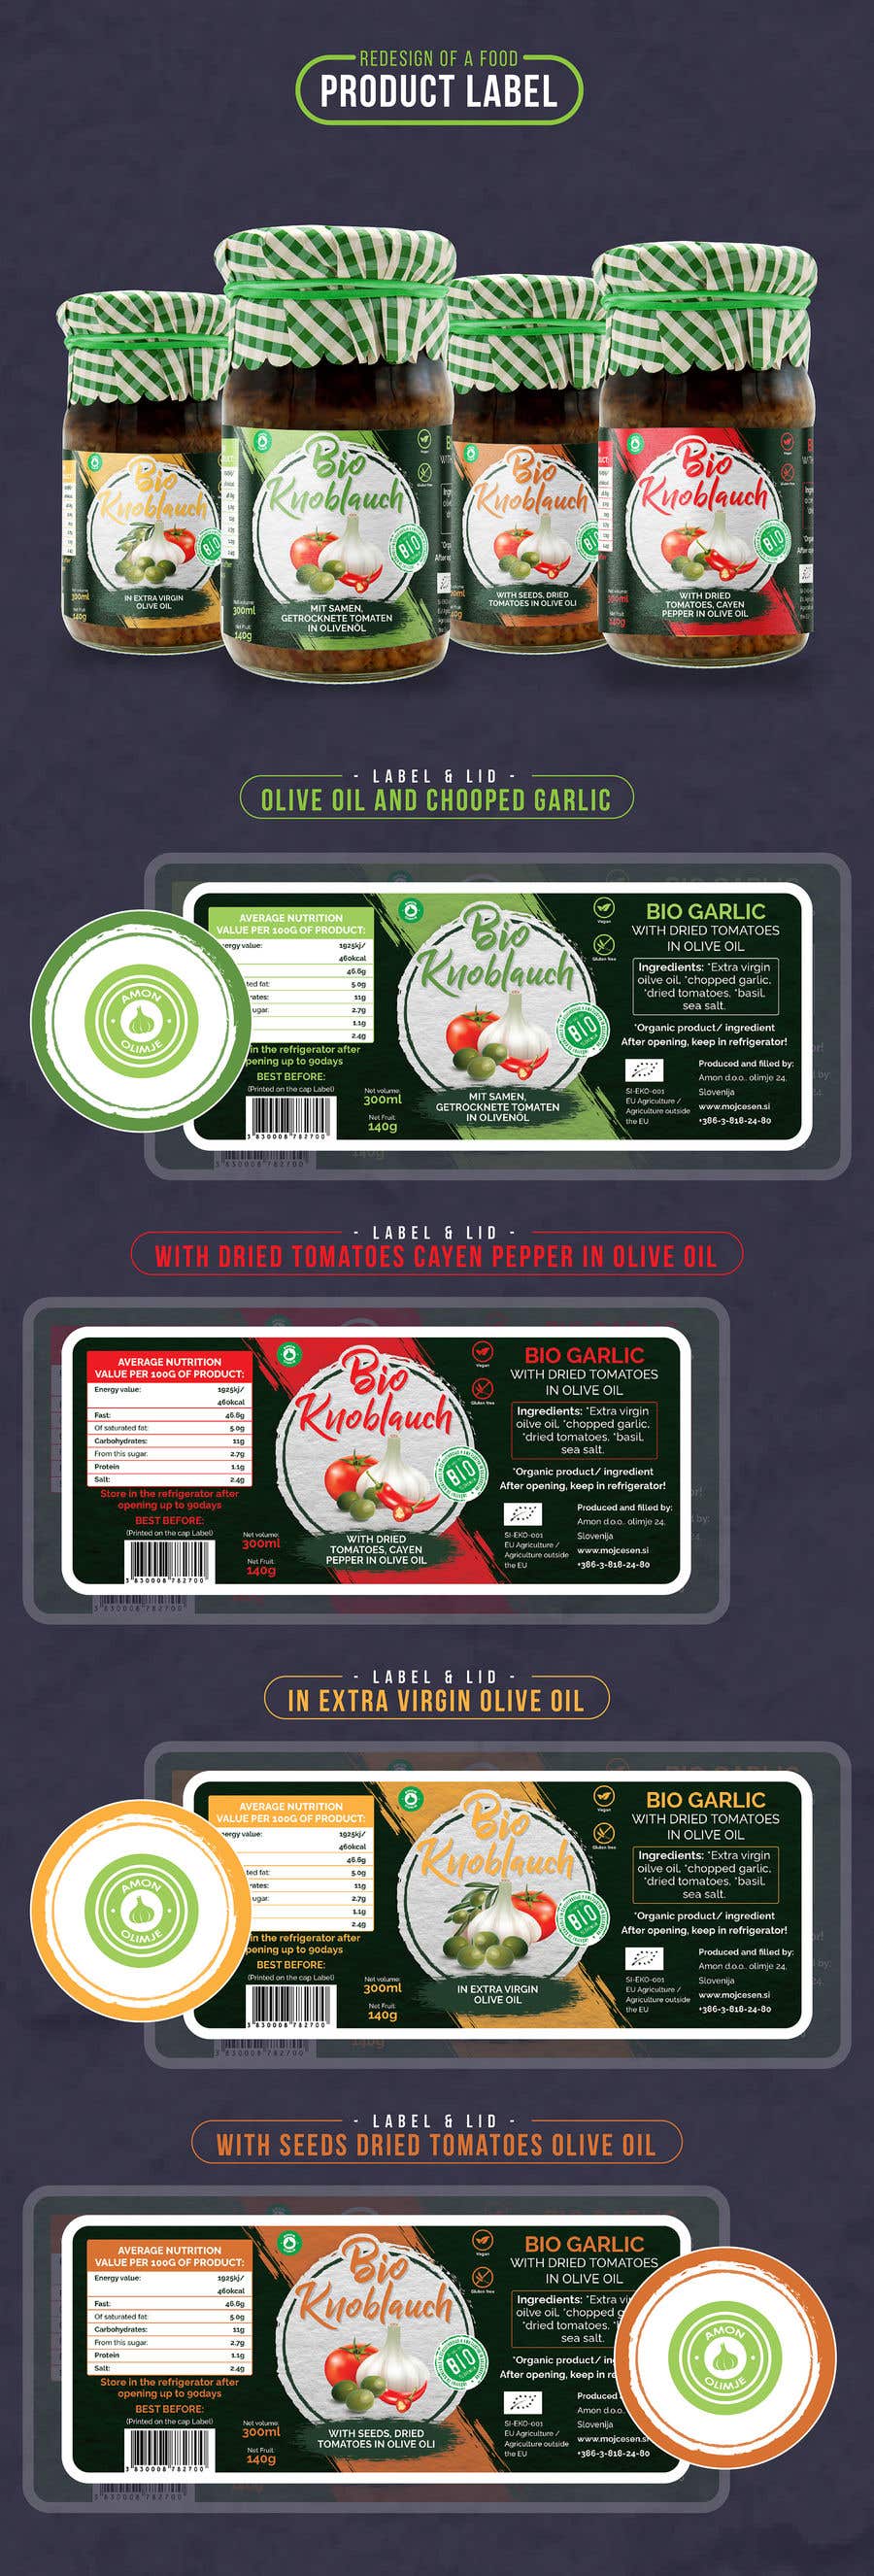 Kilpailutyö #177 kilpailussa                                                 Redesign of a food product label
                                            